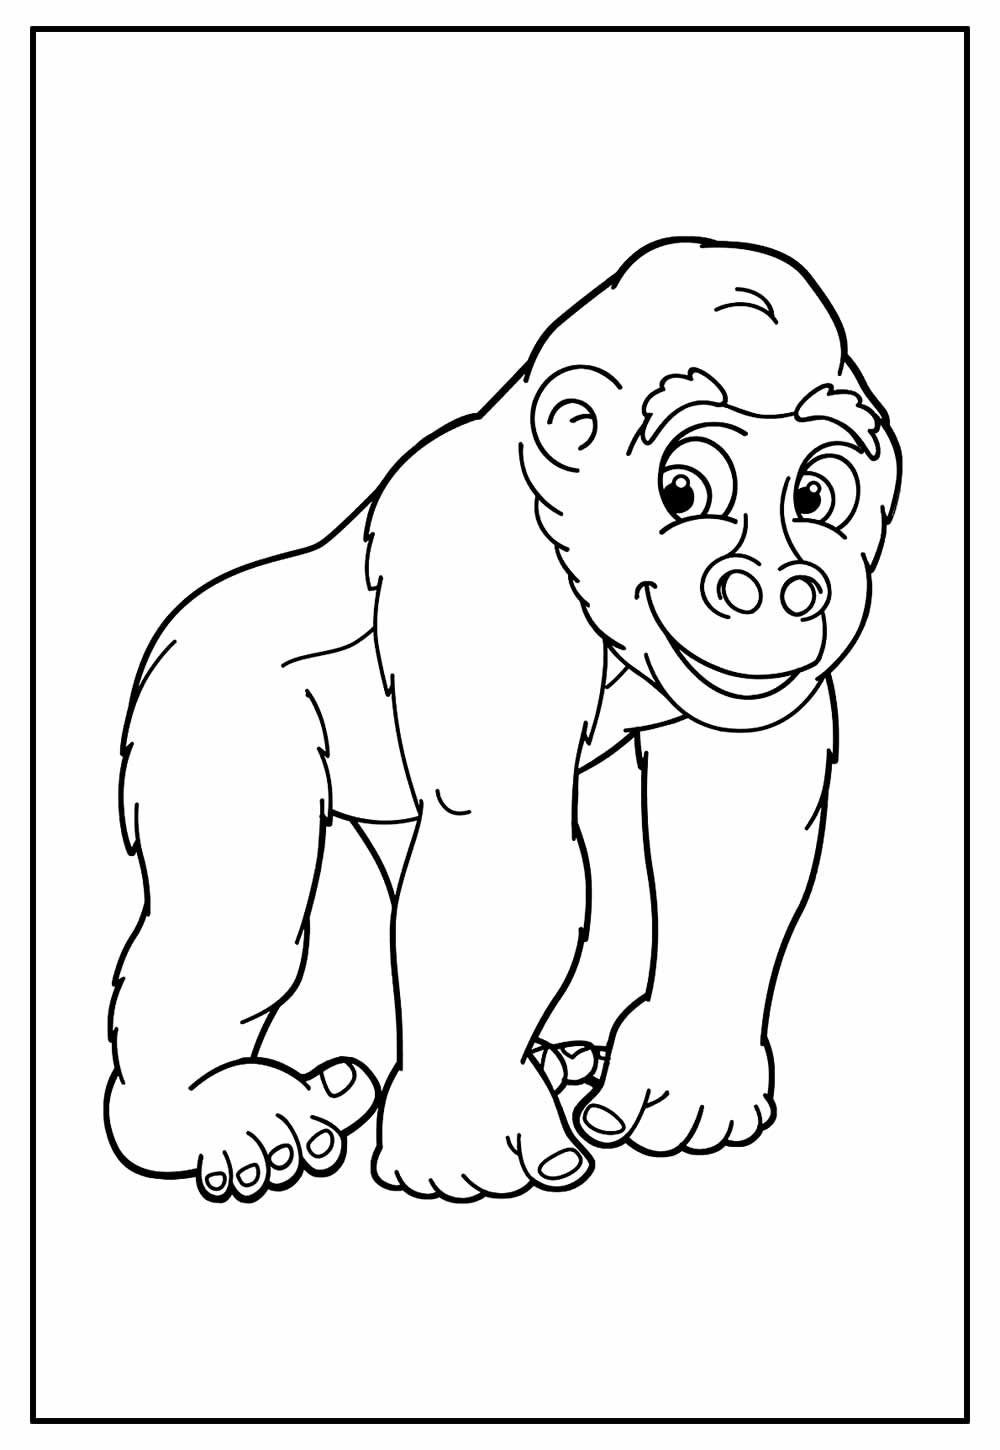 Desenho para colorir de Gorila